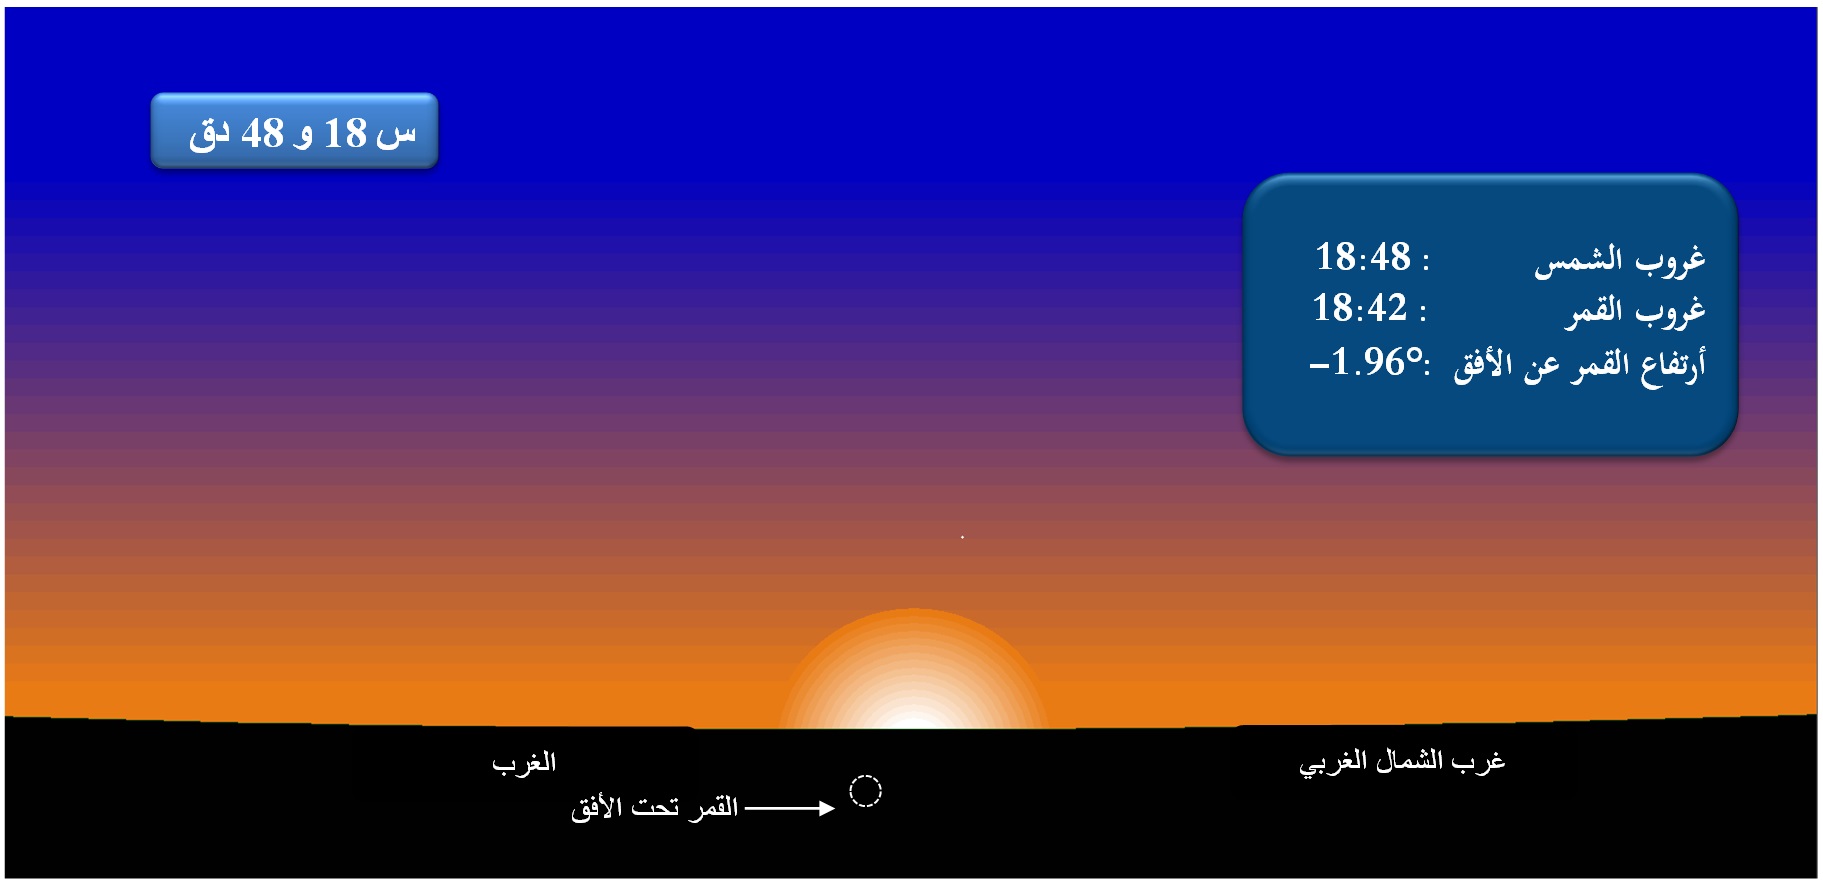 -صورة 1 : وضع القمر بالأفق الغربي بمدينة تونس وذلك  عند غروب الشمس يوم الاثنين  08 أفريل 2024  الموافق لــ 29 رمضان 1445 هجري.